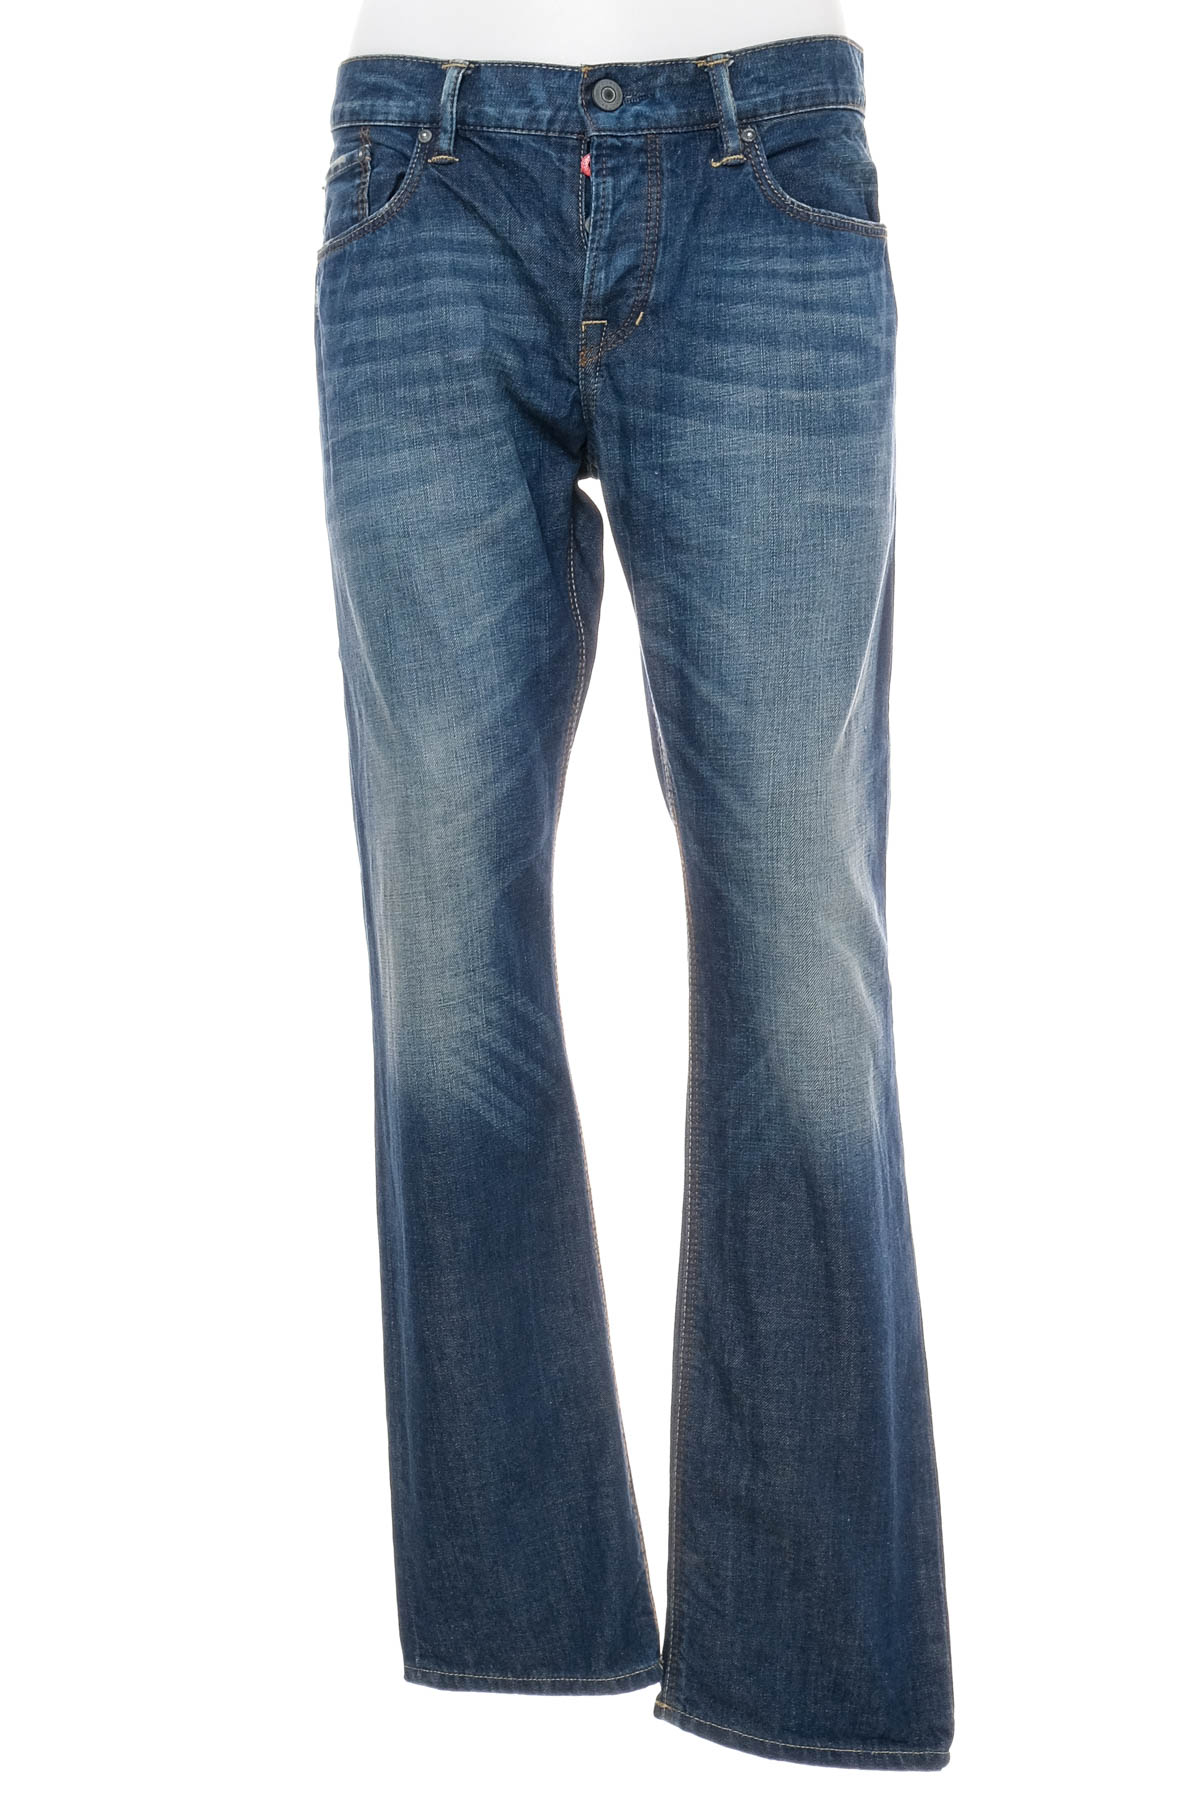 Jeans pentru bărbăți - Edc - 0